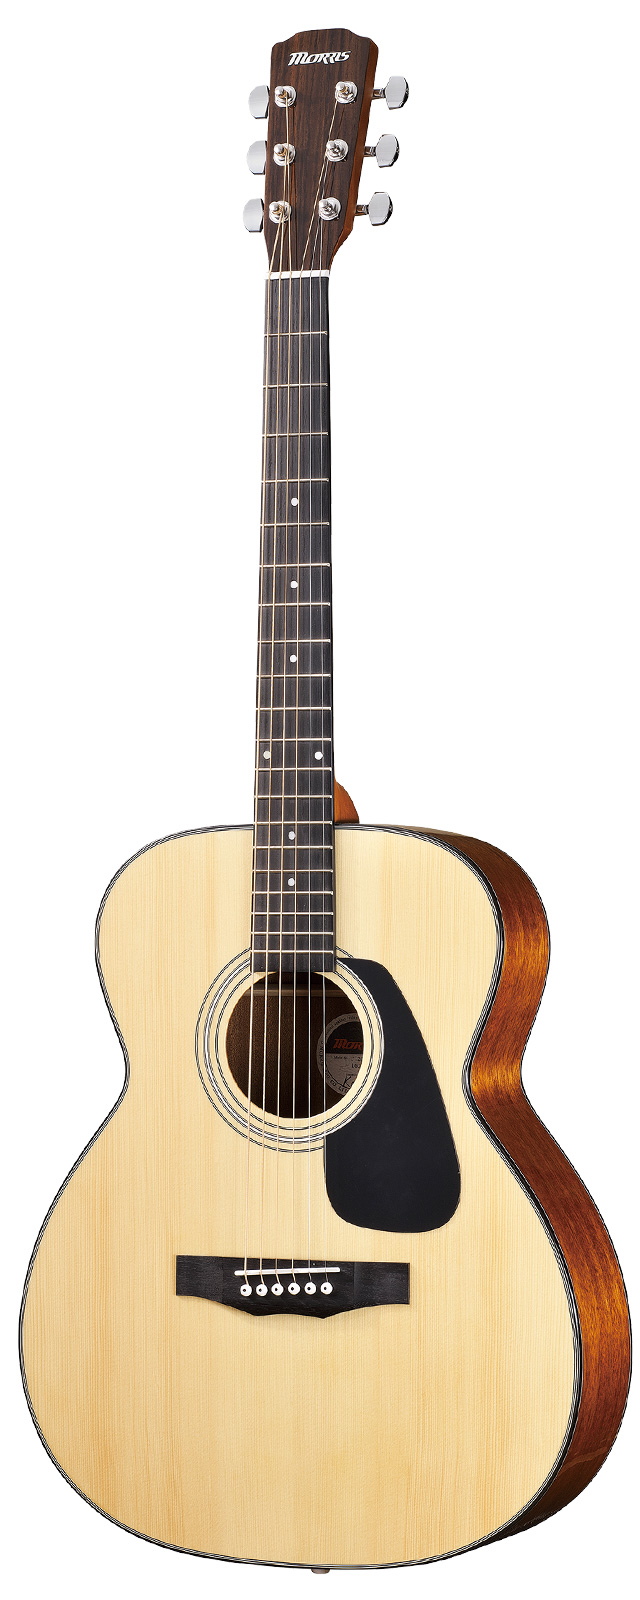 新規上場商品  F280 アコースティックギター モーリス アコースティックギター